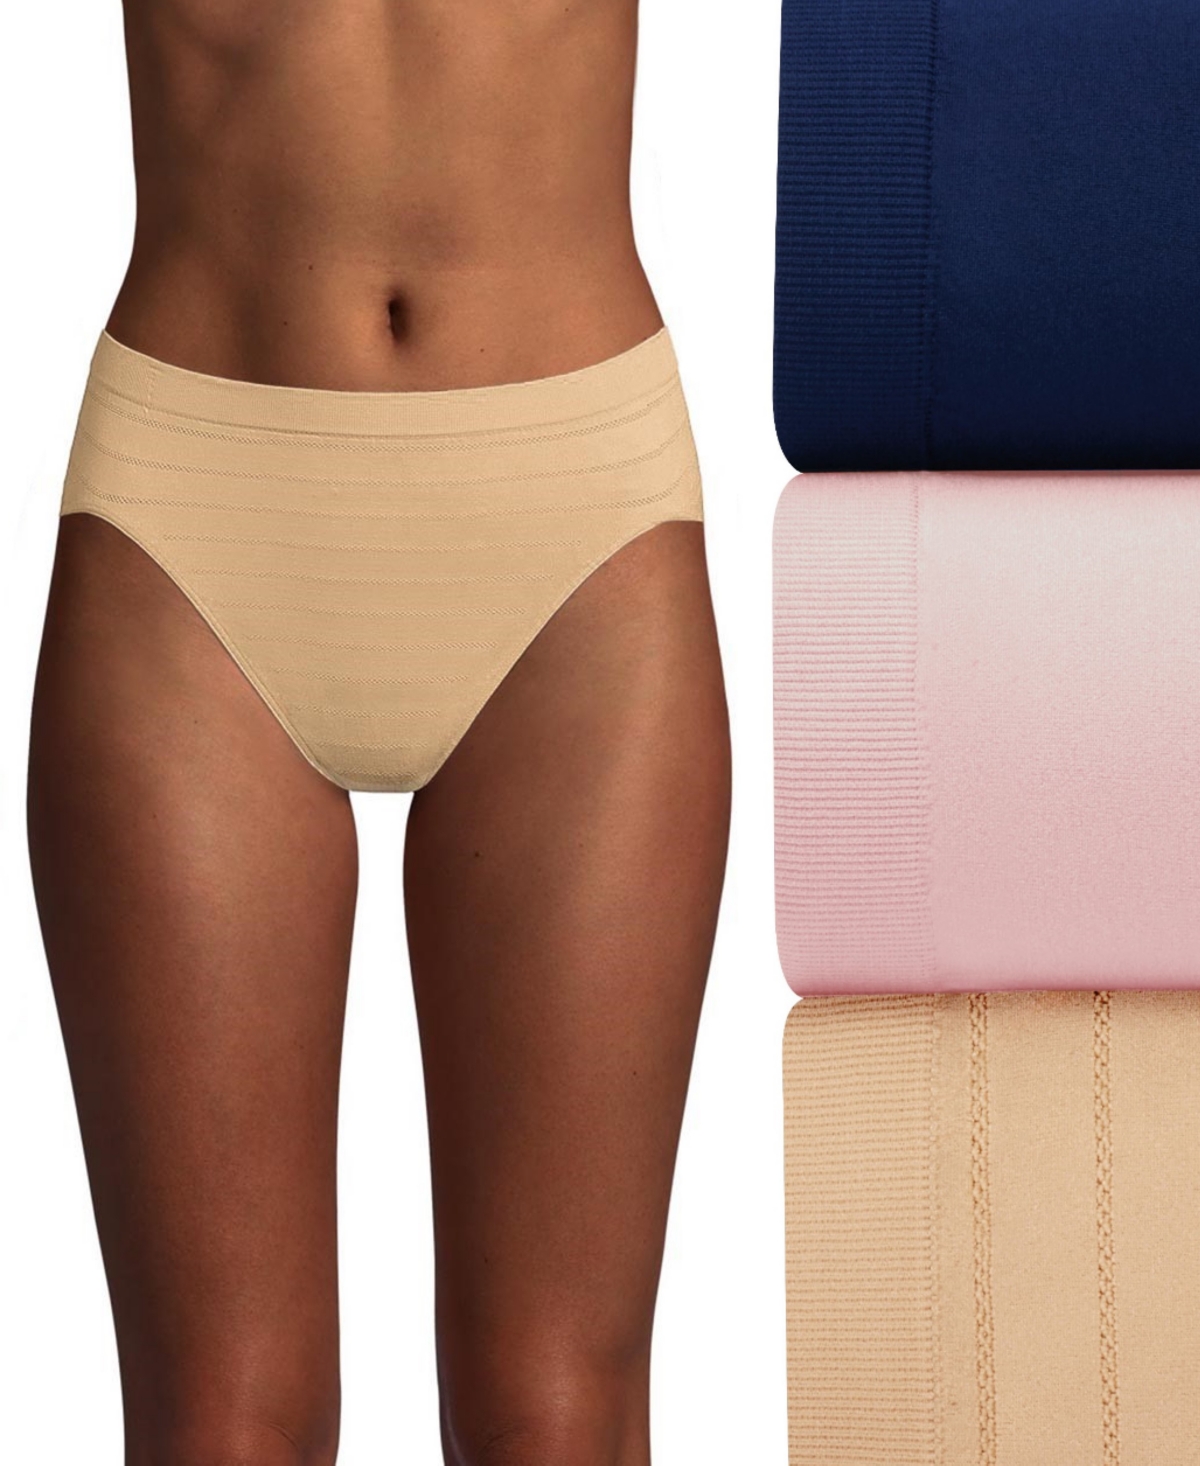 Women's 3-Pk. Cool Comfort Microfiber Brief Underwear - White/Sand/Blush